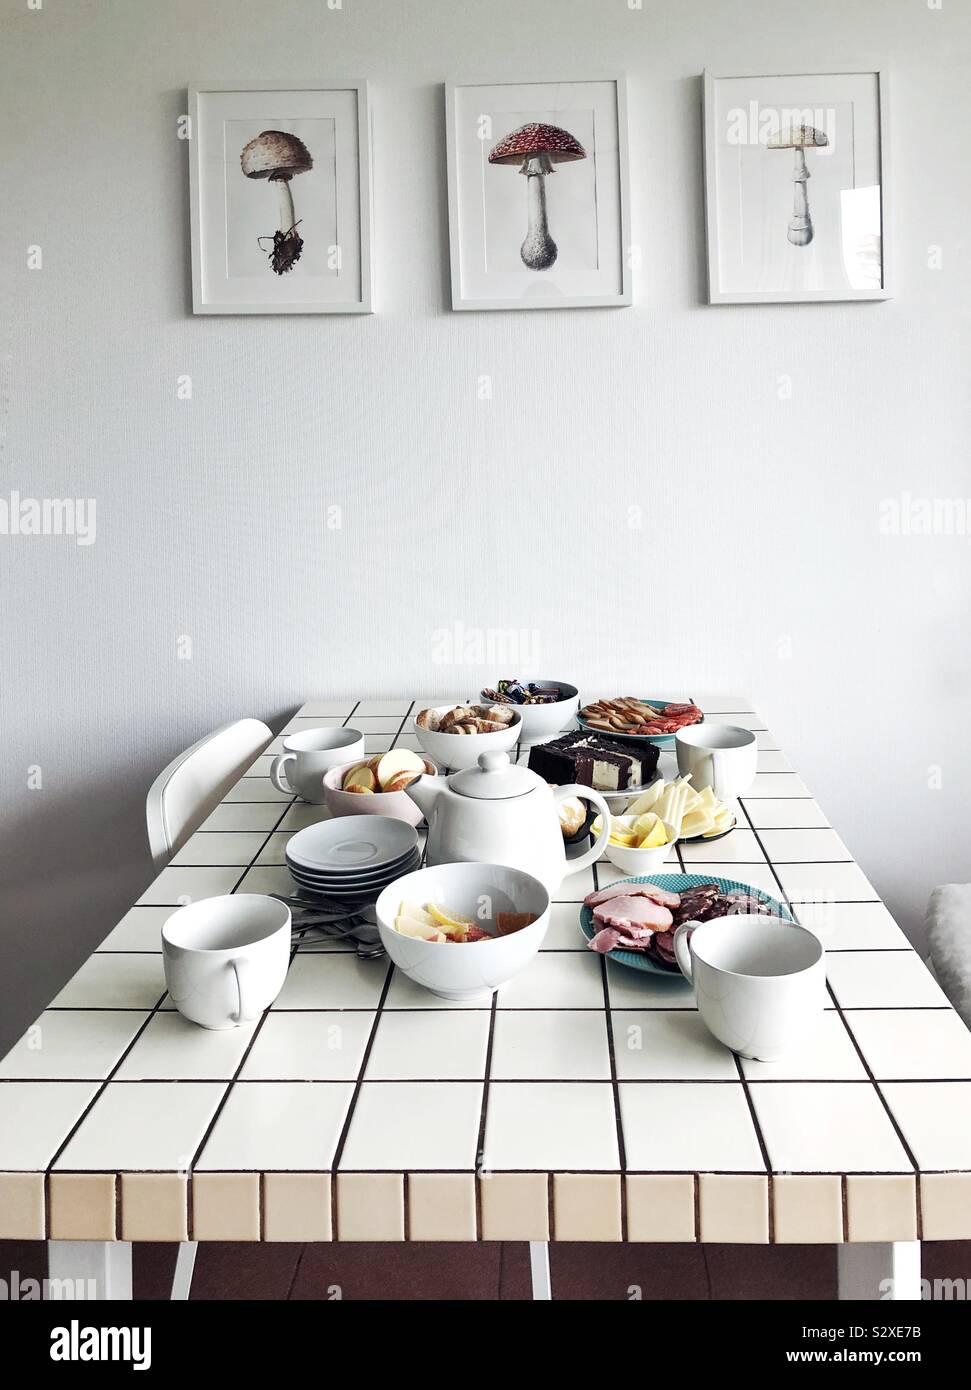 Modern design white kitchen with table set for tea Stock Photo